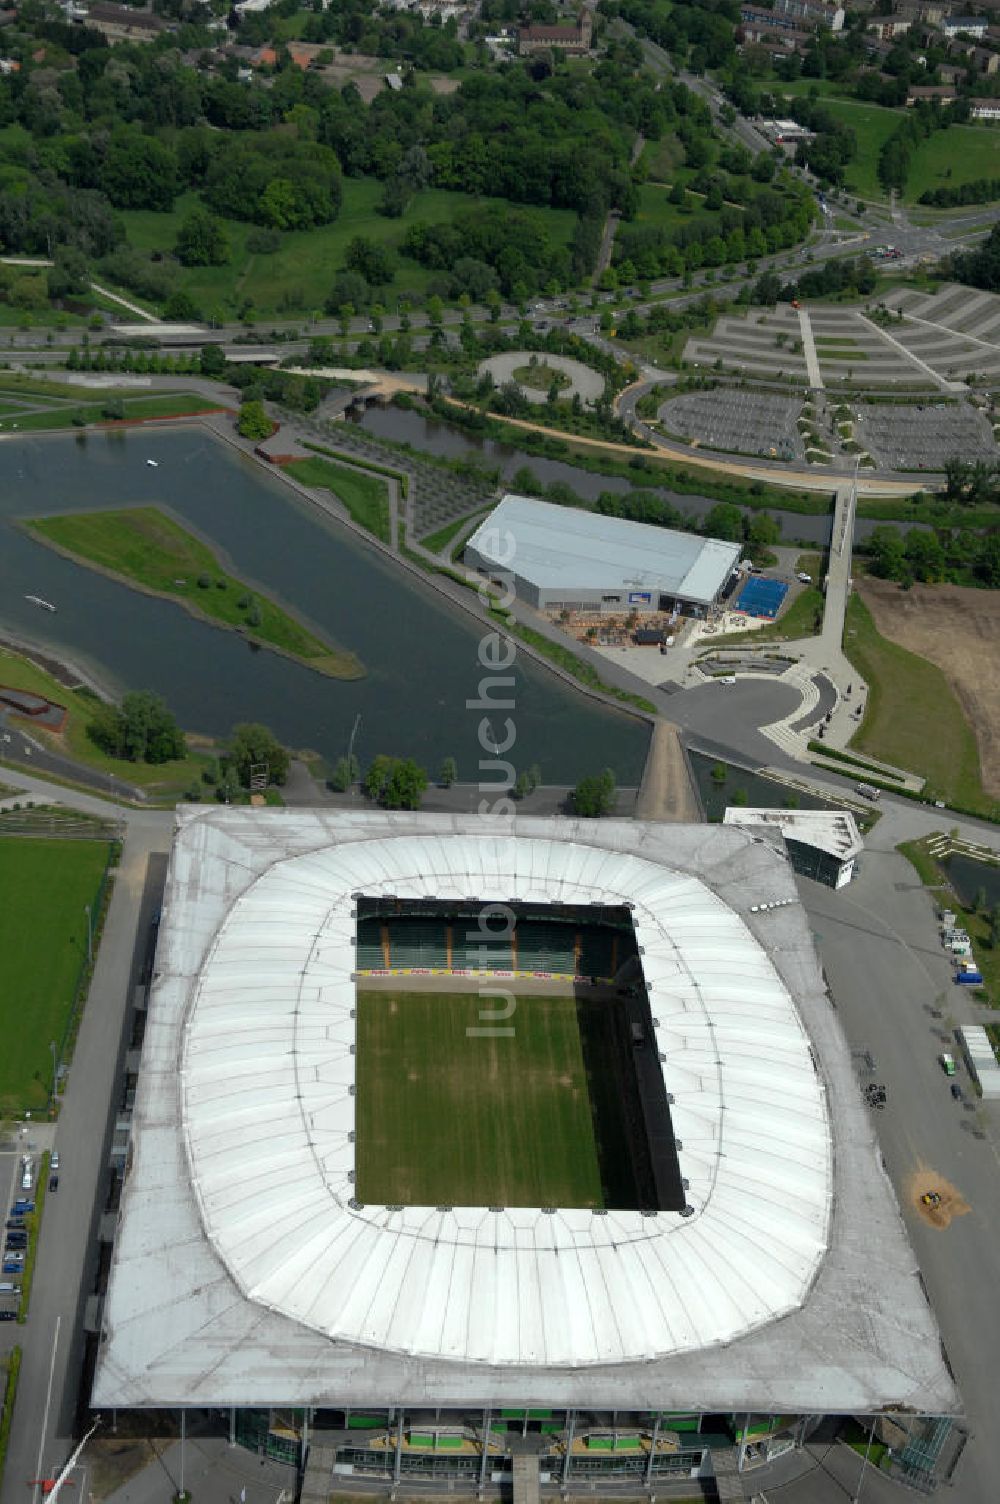 Luftaufnahme Wolfsburg - Volkswagen Arena / Stadion Wolfsburg